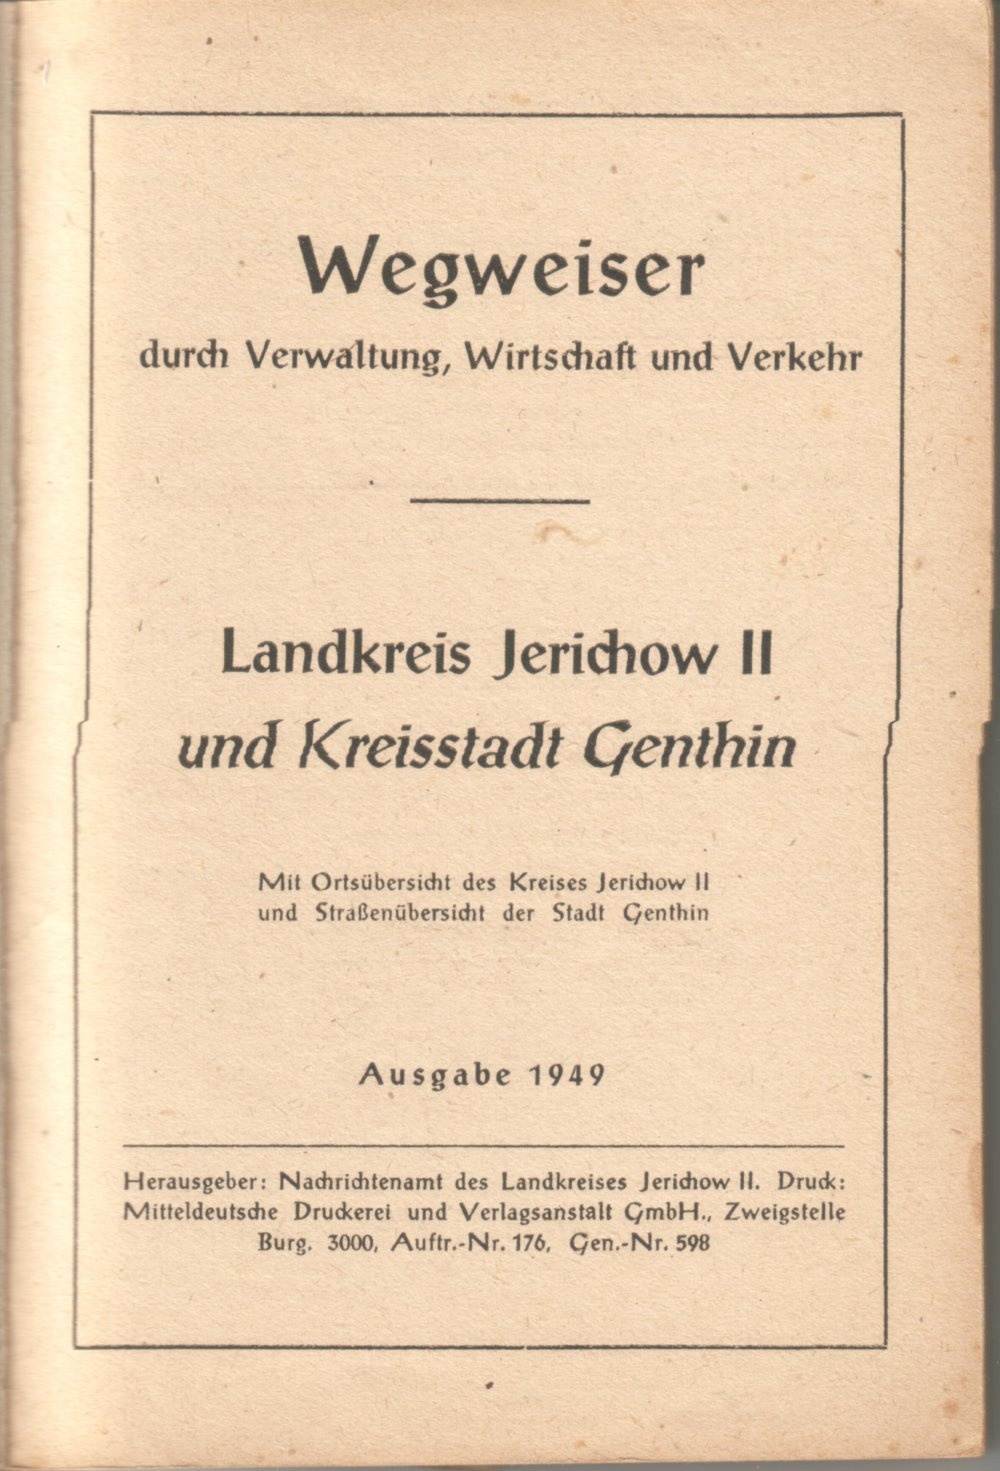 Wegweiser durch Verwaltung, Wirtschaft und Verkehr, Landkreis Jerichow II (Kreismuseum Jerichower Land, Genthin CC BY-NC-SA)